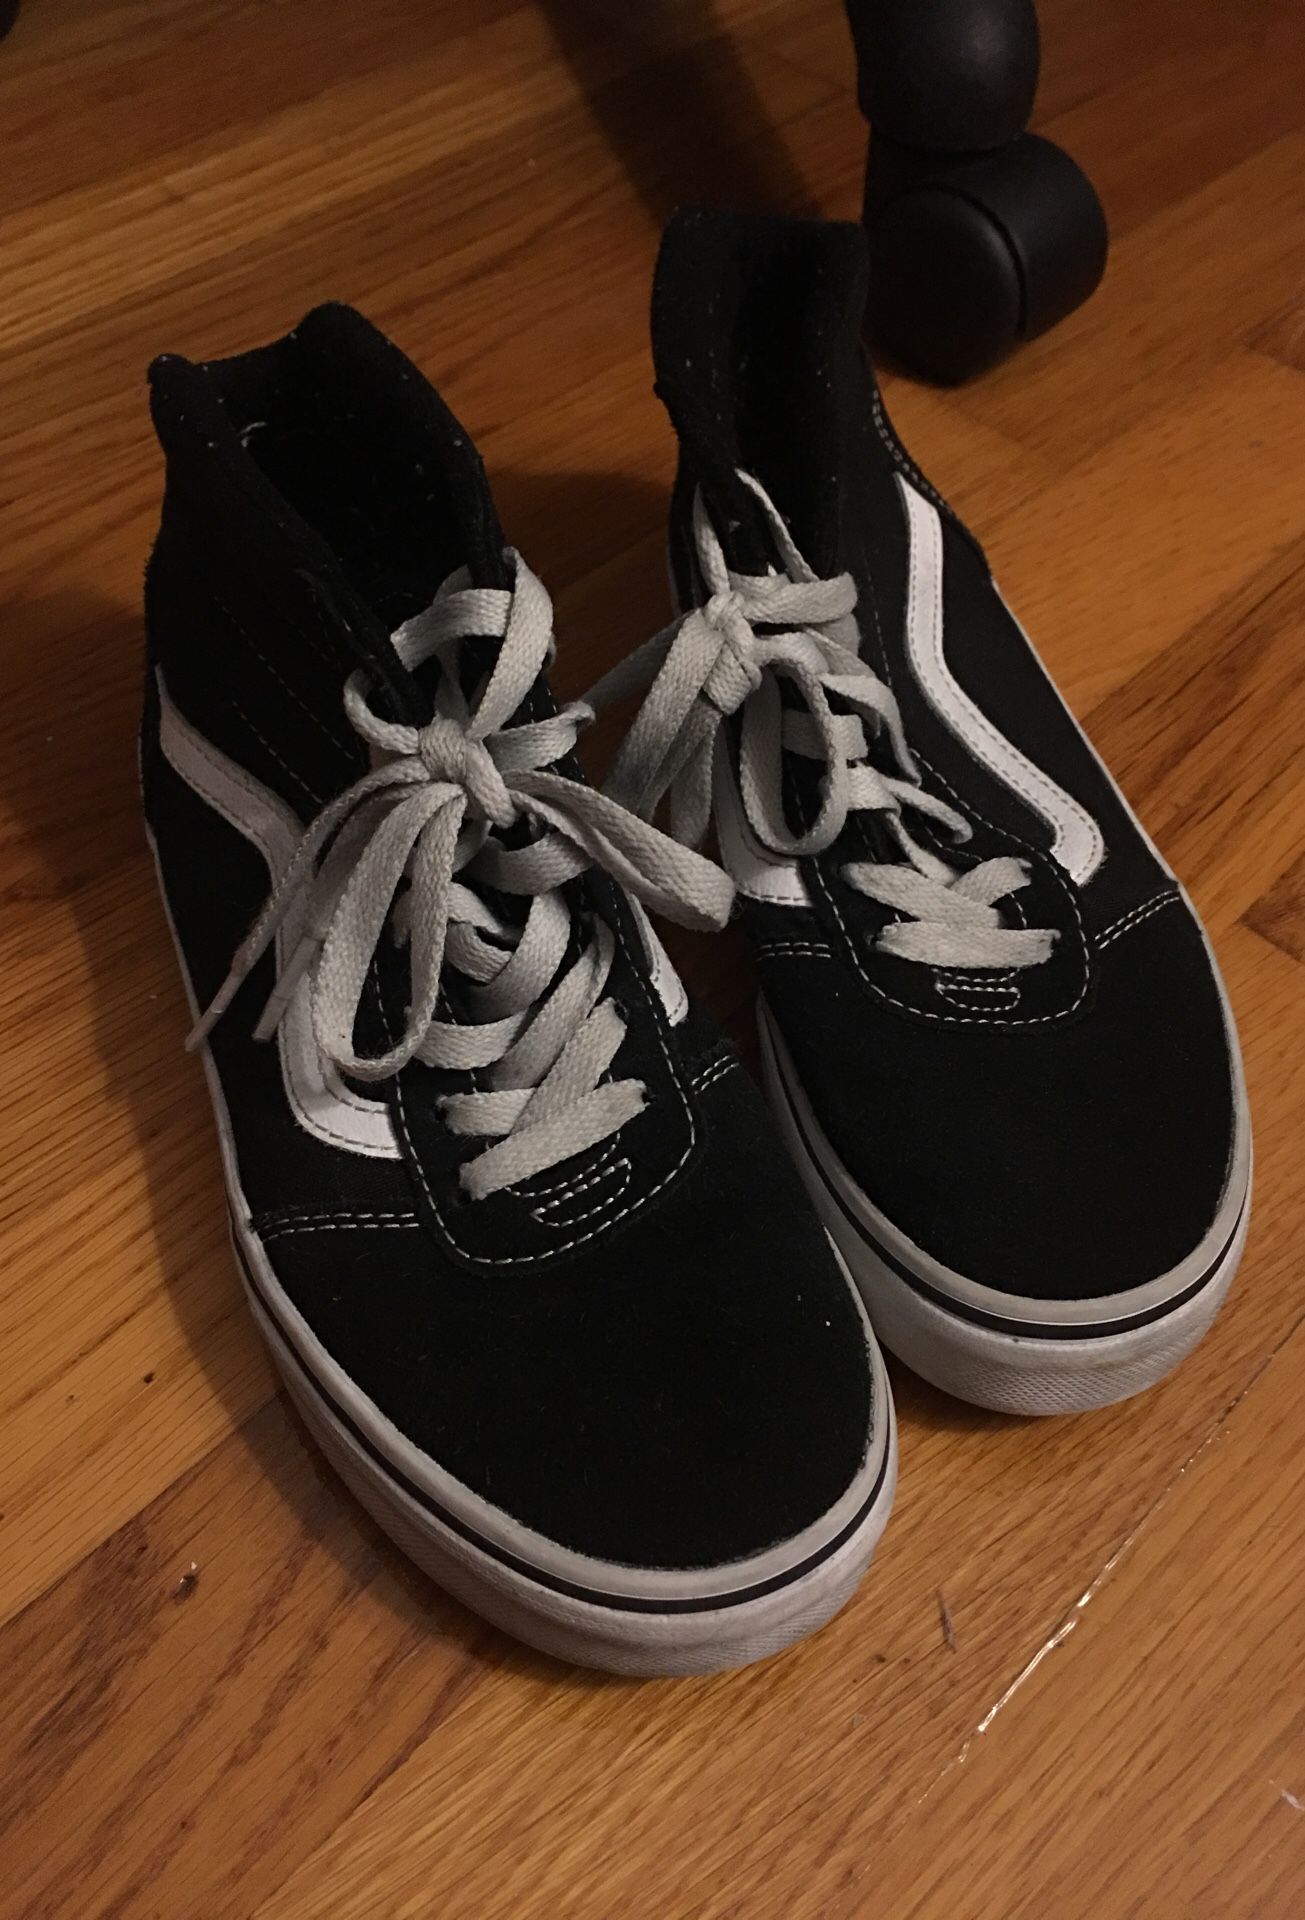 Vans kids black sneakers size 3